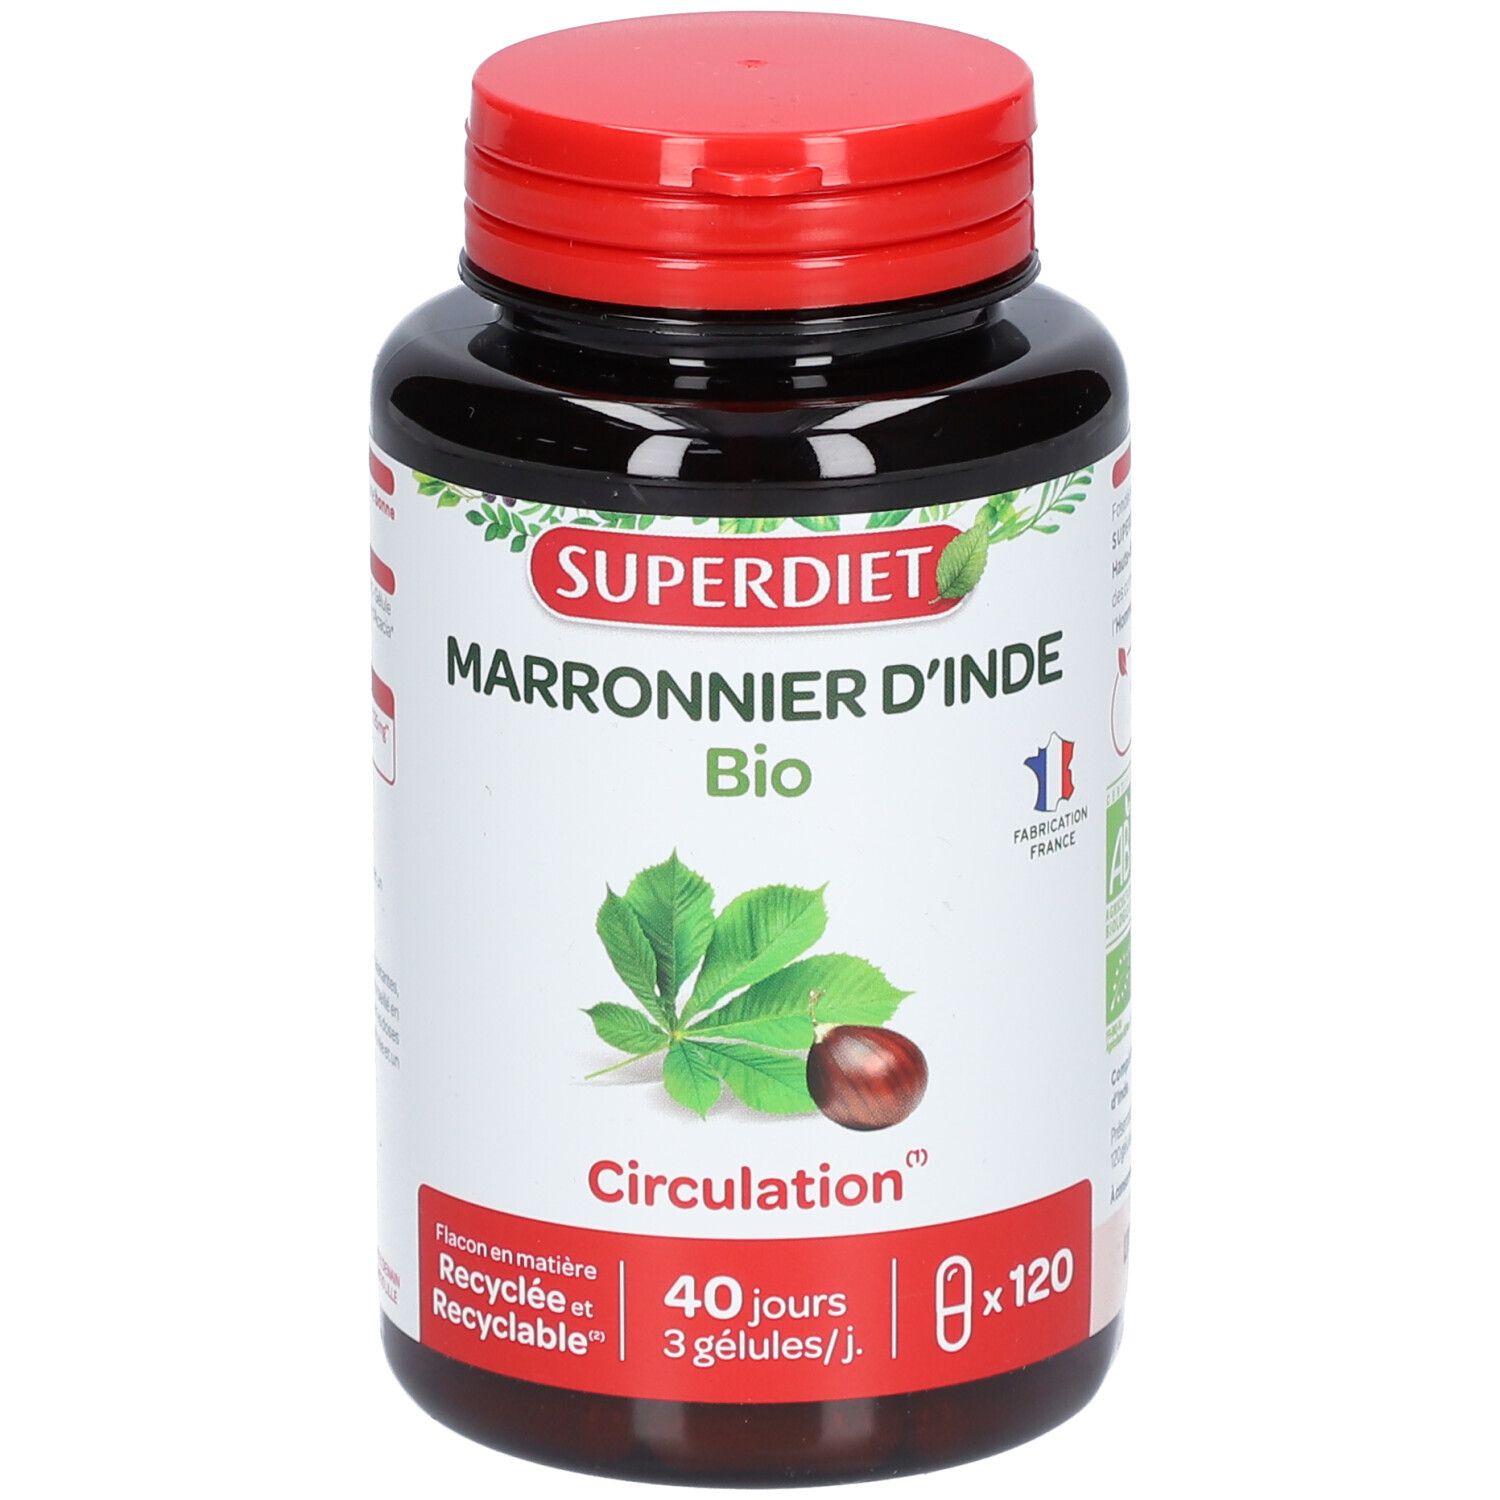 Super Diet Marronnier d'inde Bio Circulation